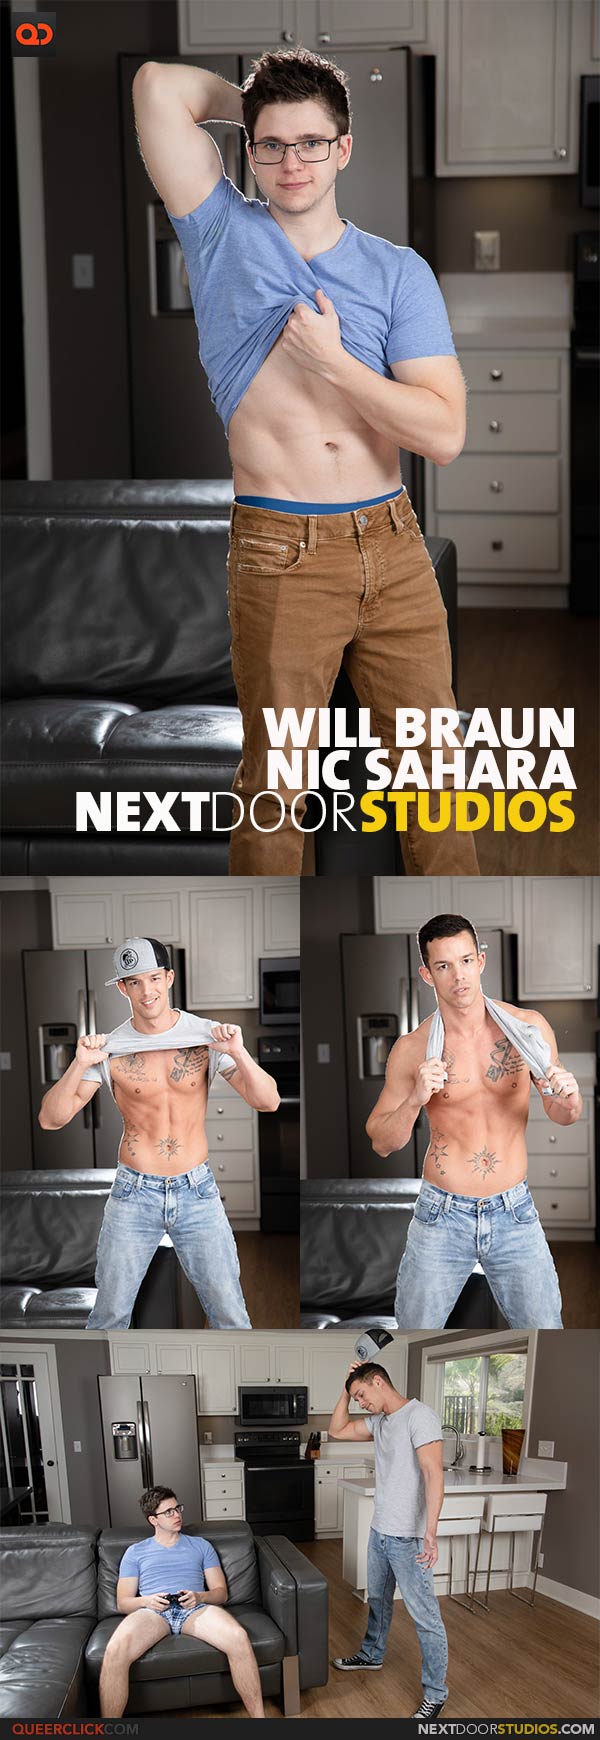 NextDoorStudios: Will Braun and Nic Sahara 